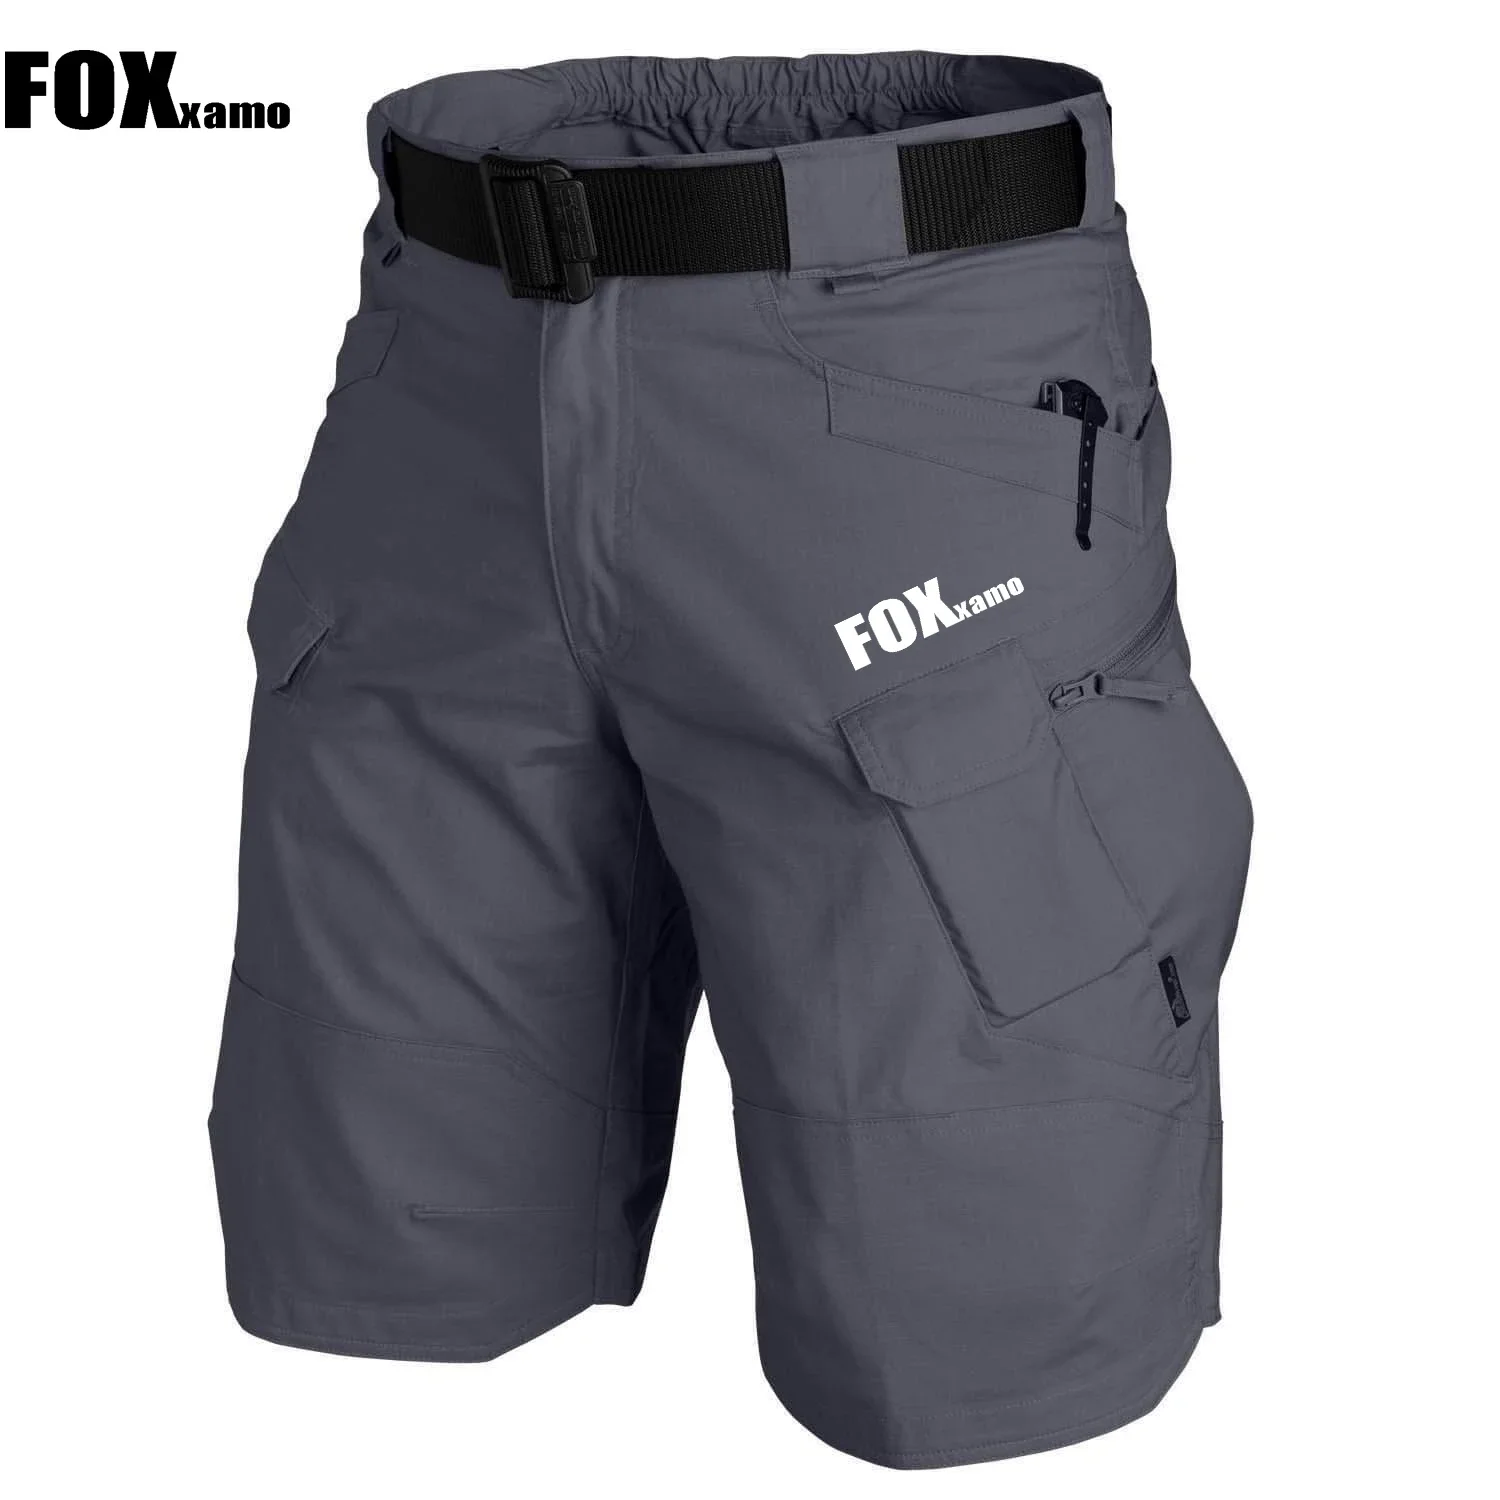 

Шорты Foxxamo мужские велосипедные свободного кроя, спортивные короткие штаны для горных велосипедов, для активного отдыха, походов, горнолыжного спорта